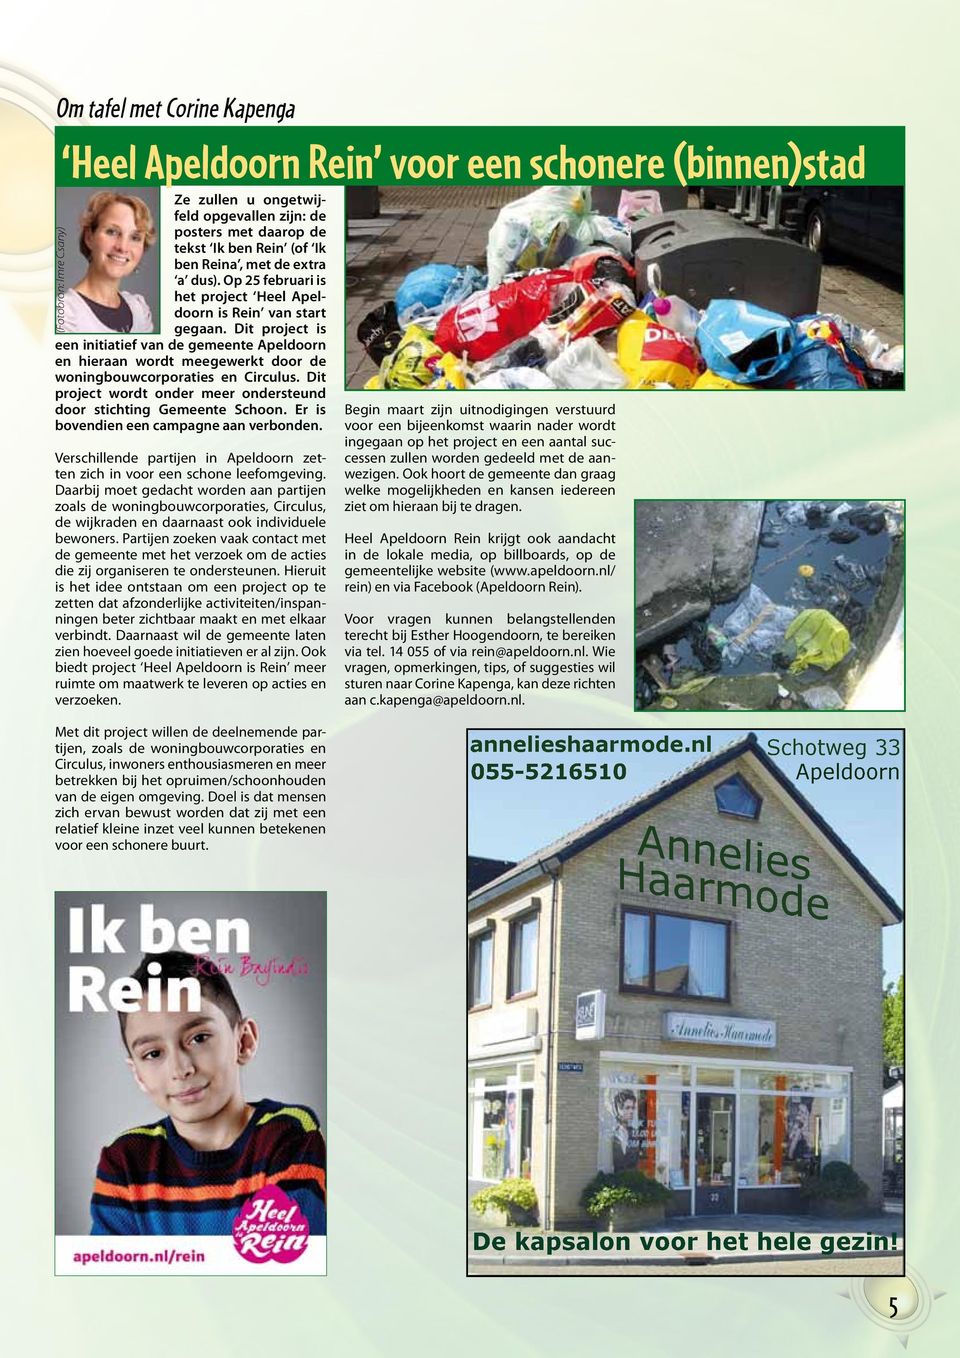 Dit project is een initiatief van de gemeente Apeldoorn en hieraan wordt meegewerkt door de woningbouwcorporaties en Circulus. Dit project wordt onder meer ondersteund door stichting Gemeente Schoon.